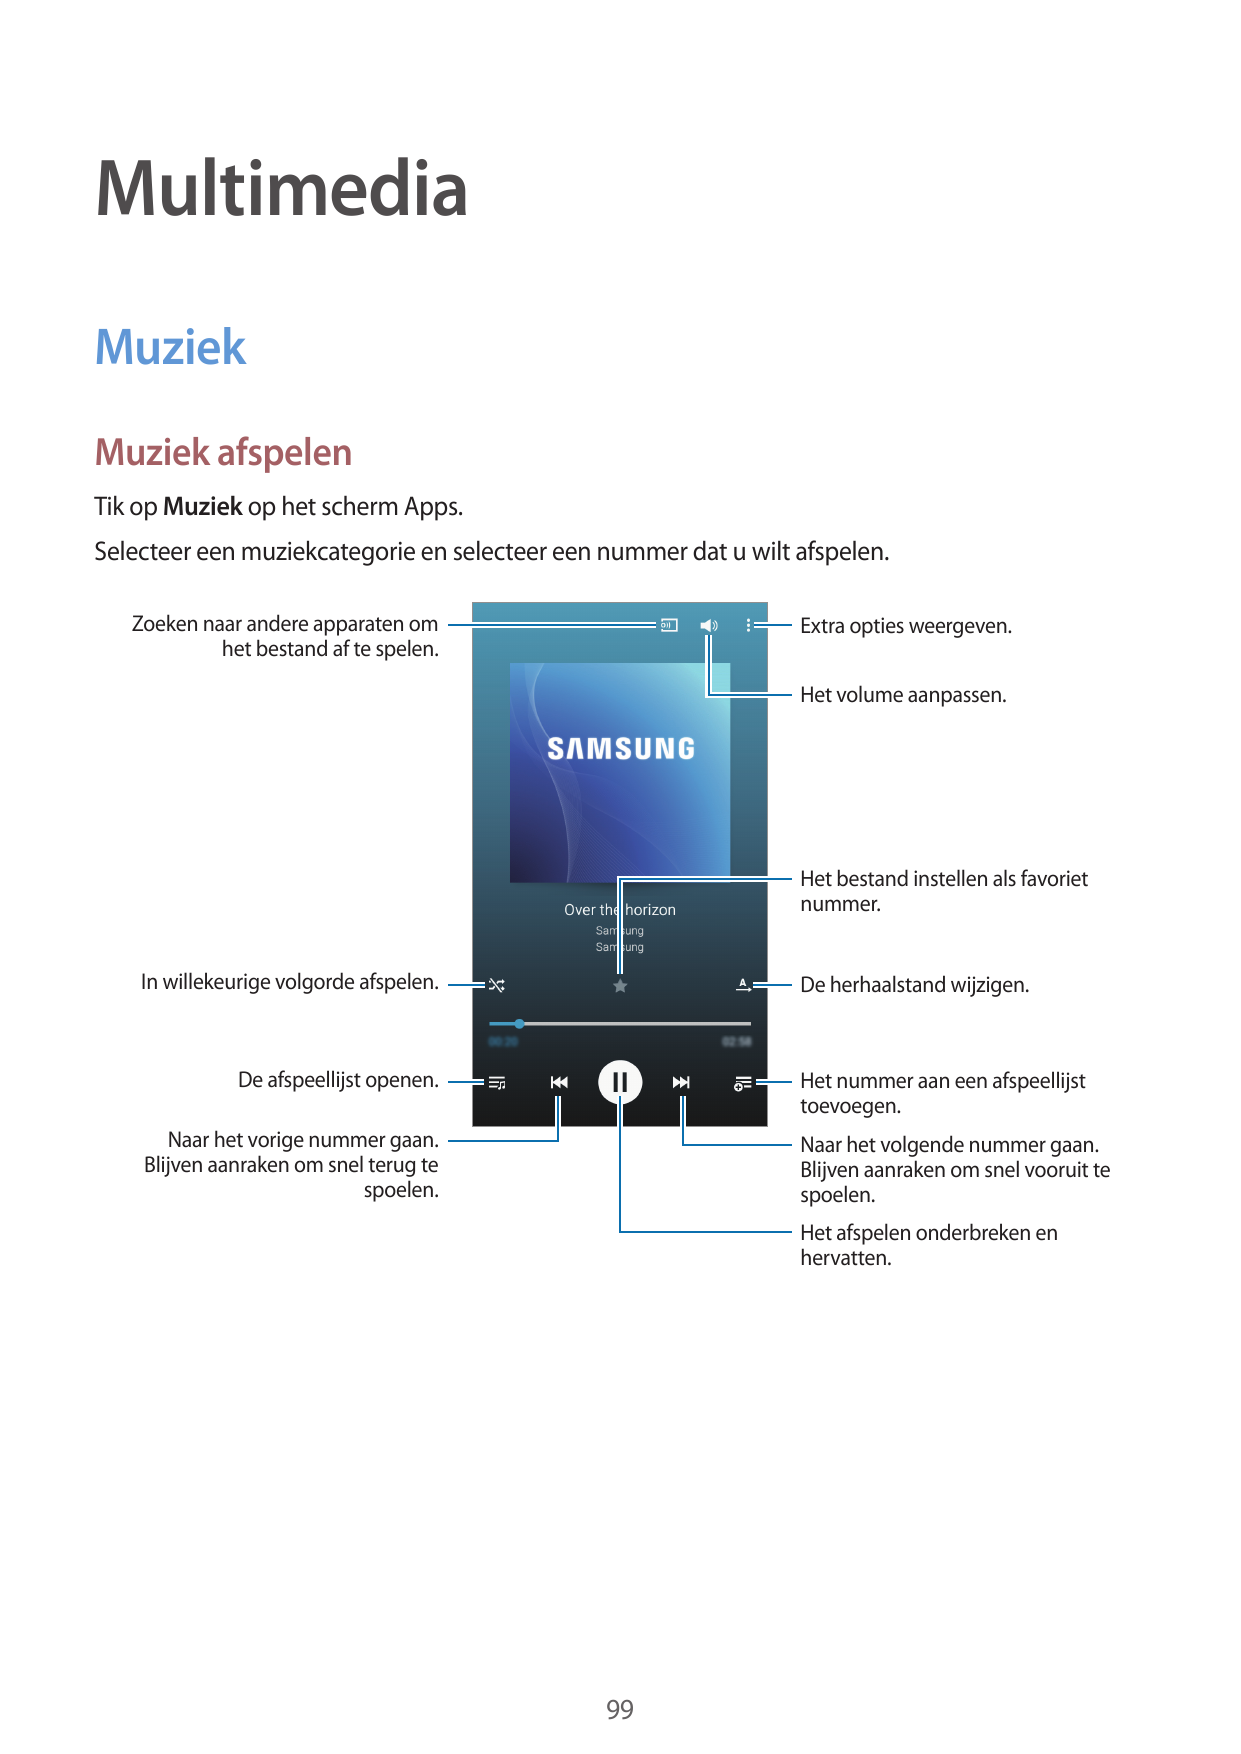 MultimediaMuziekMuziek afspelenTik op Muziek op het scherm Apps.Selecteer een muziekcategorie en selecteer een nummer dat u wilt